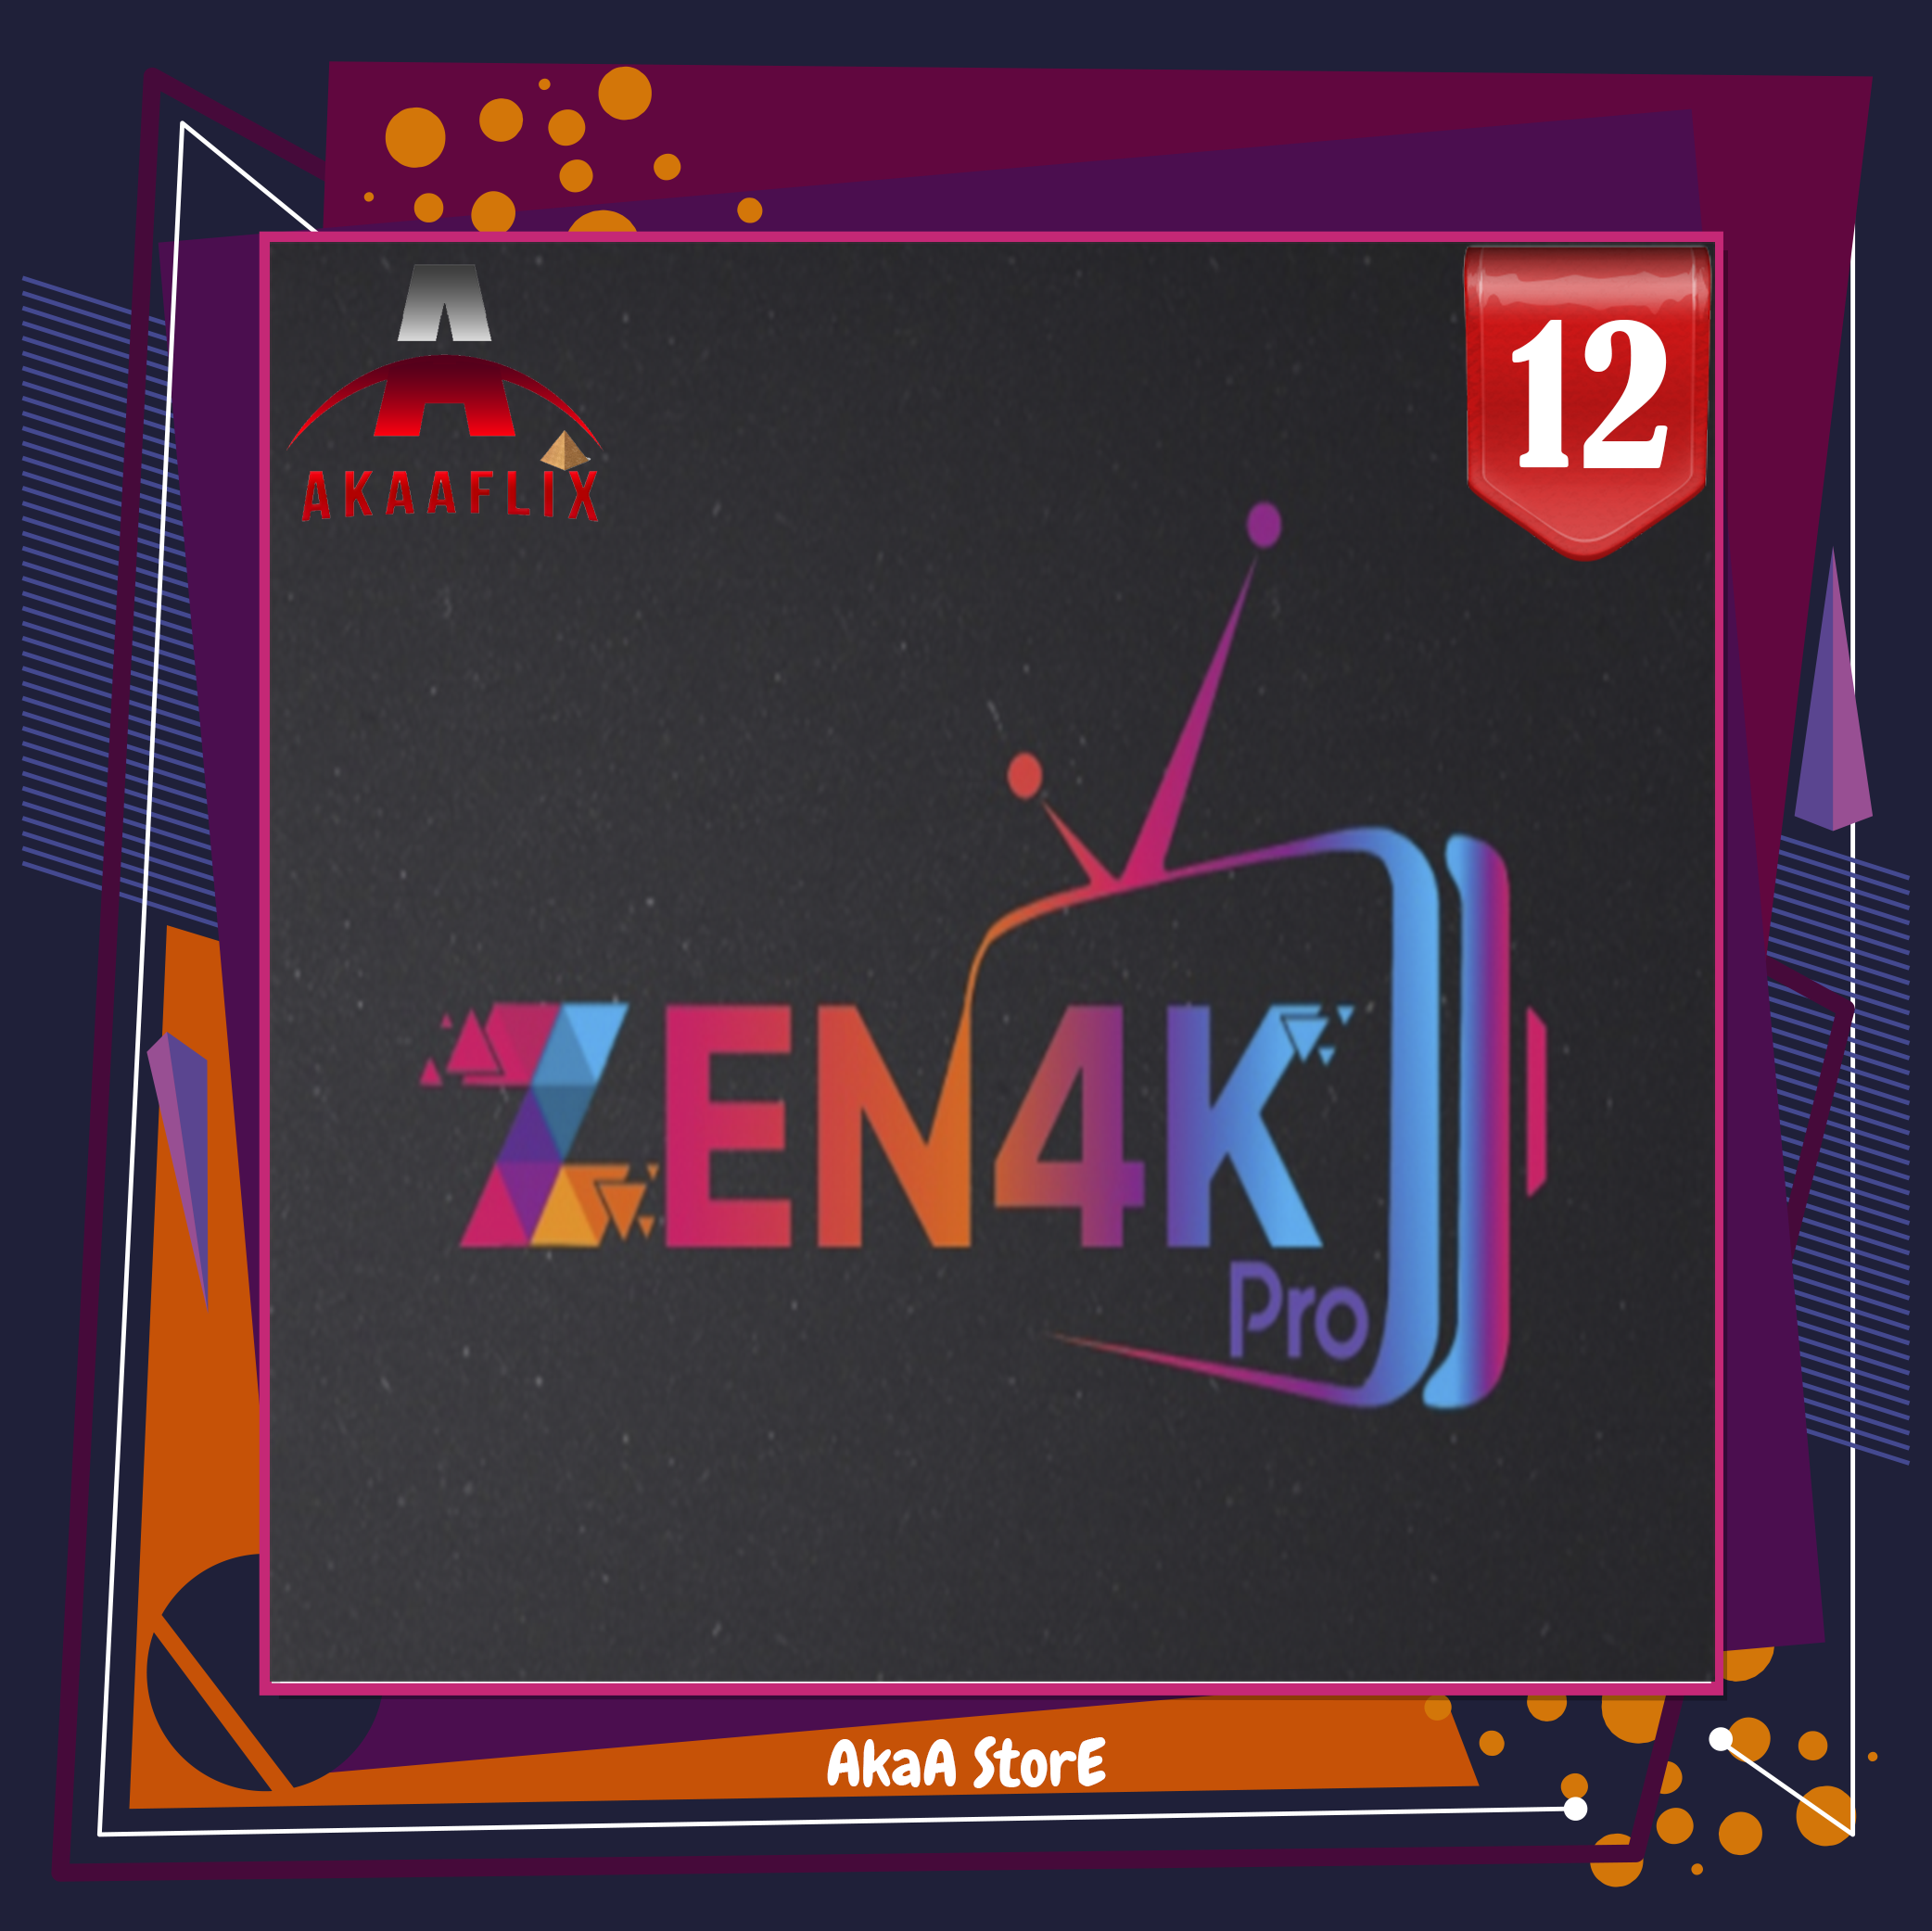 اشتراك ZEN4K زين 12 شهر